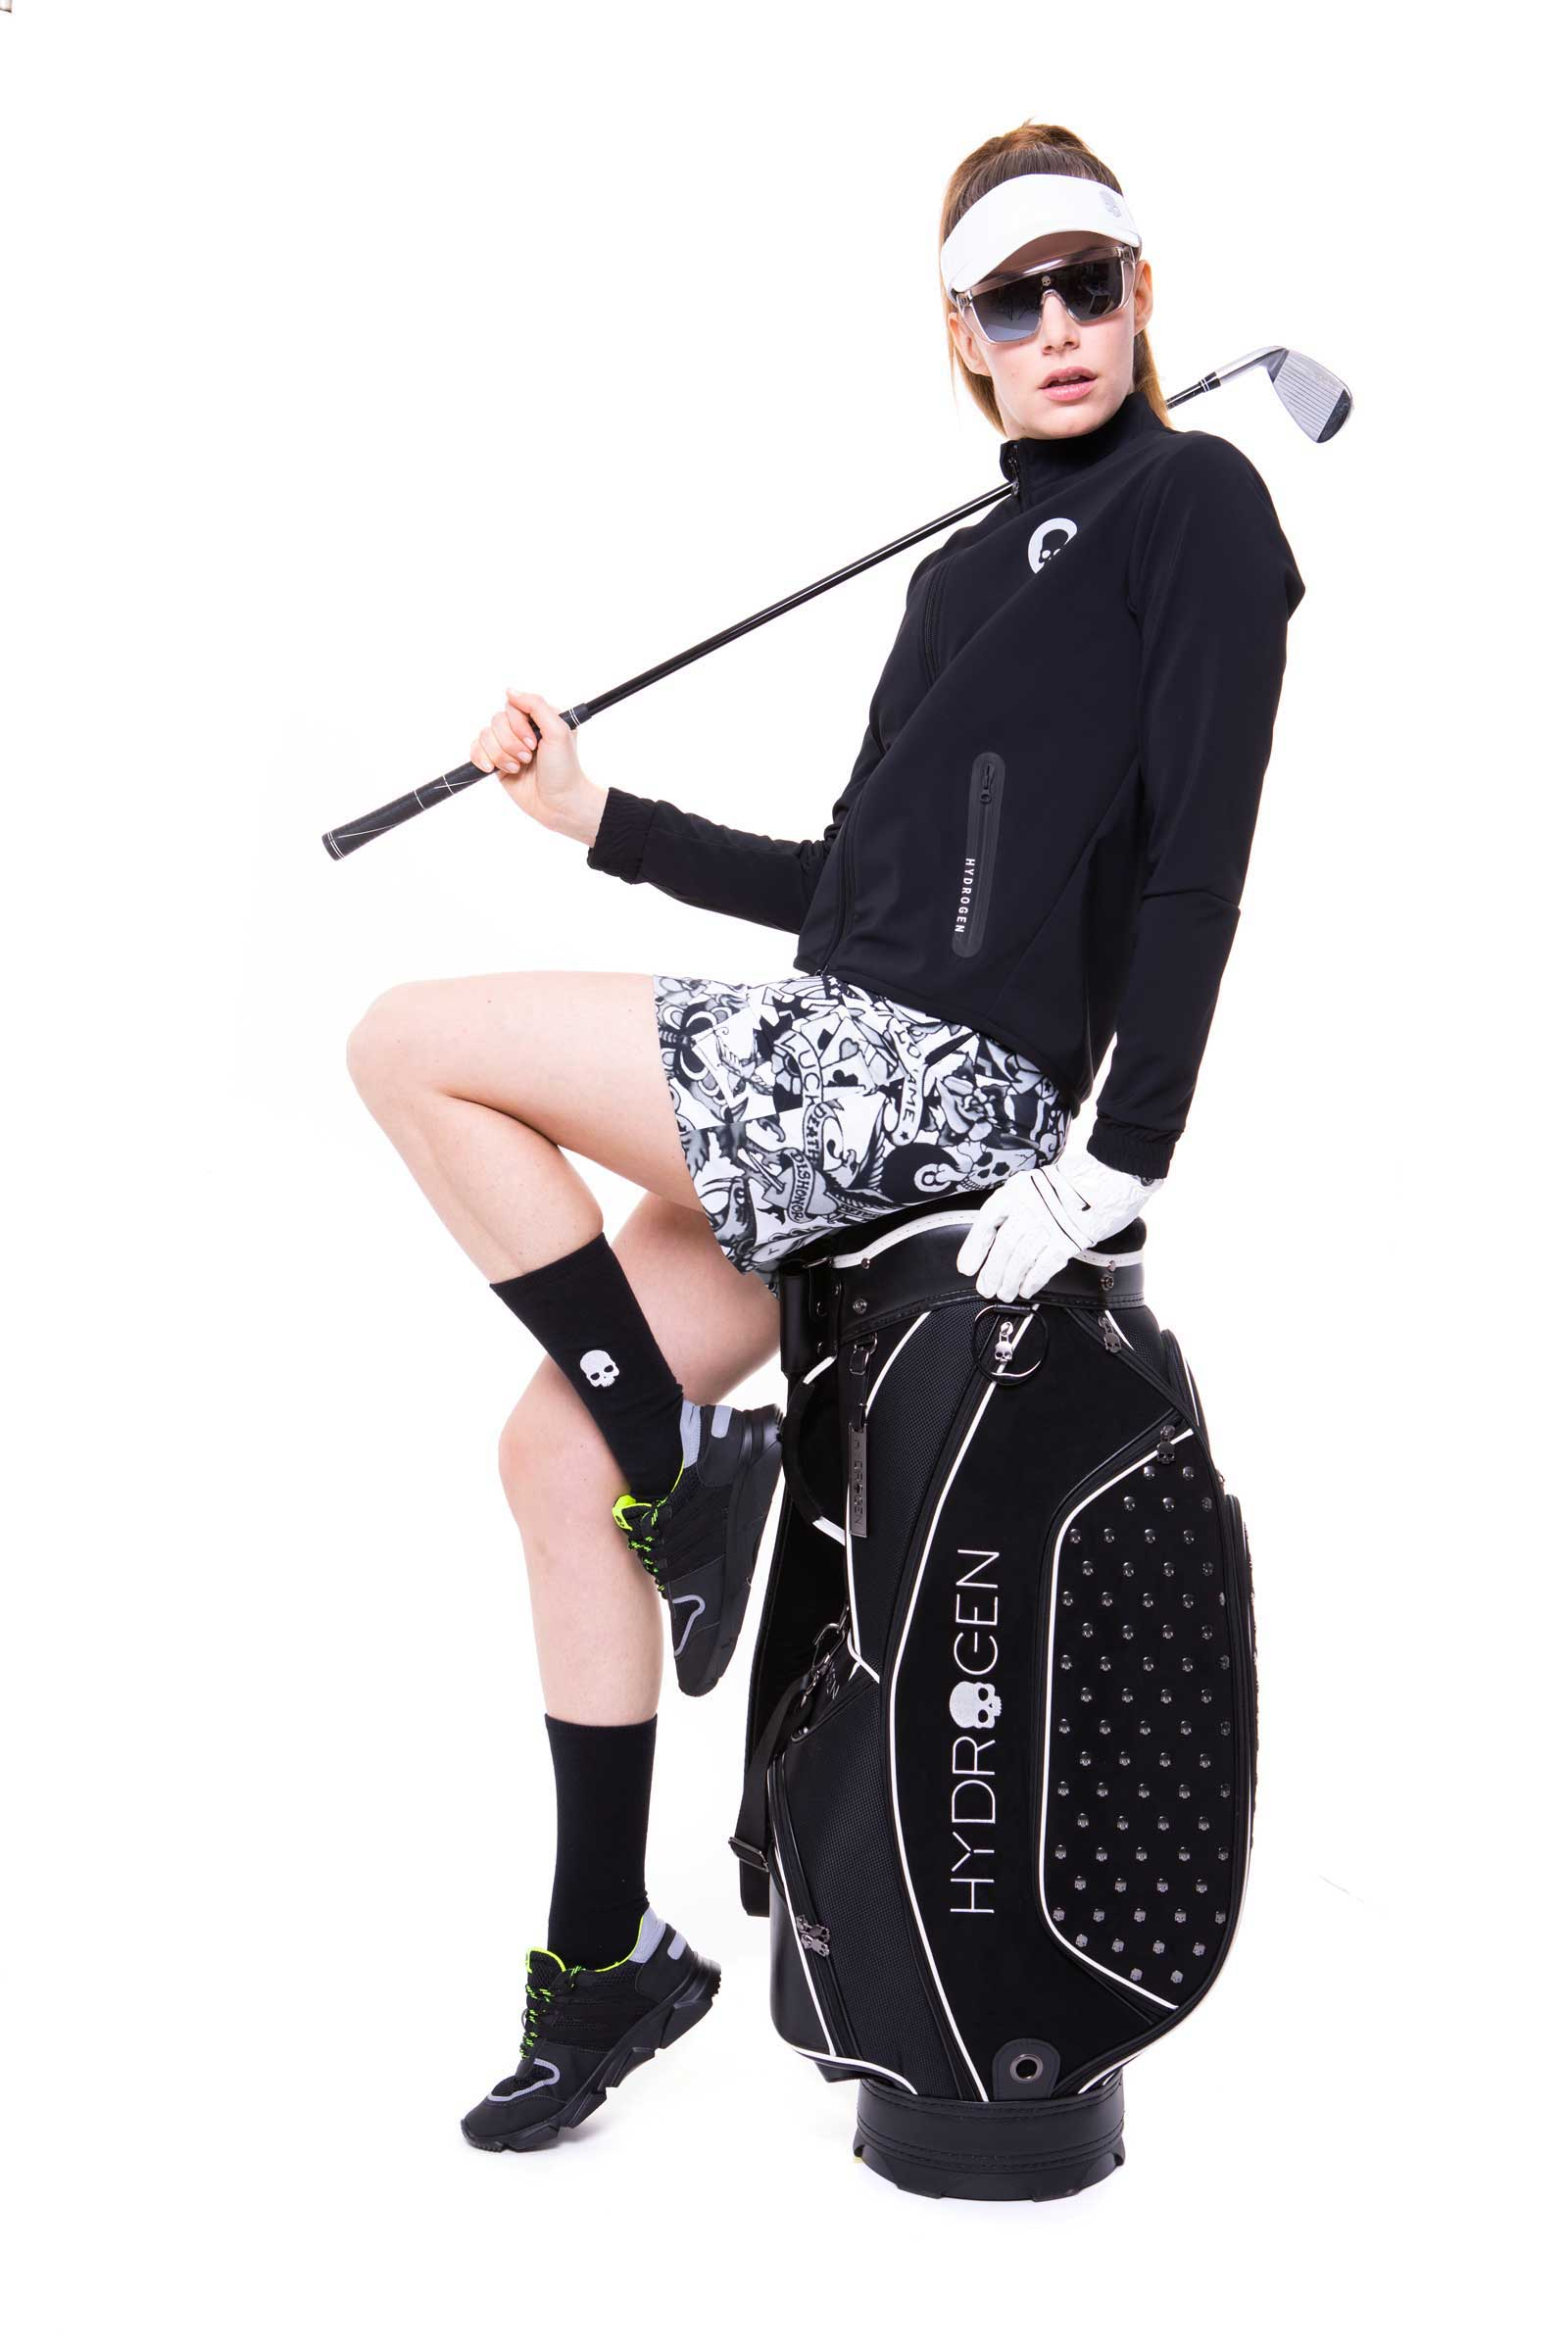 GOLF JKT - Apparel - Outlet Hydrogen - Luxury Sportwear